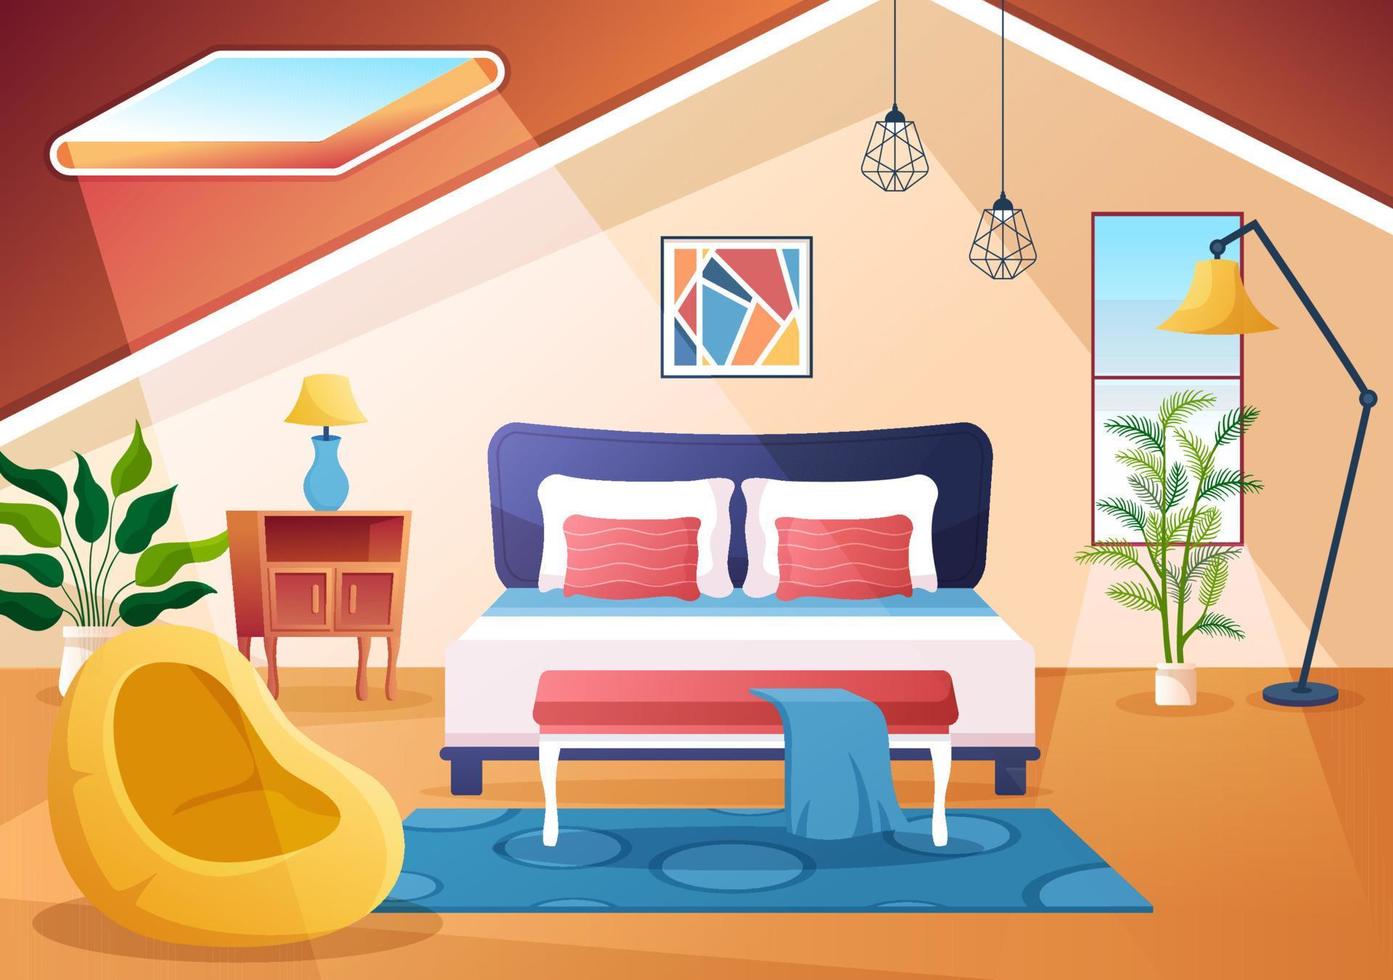 mysig sovrumsinredning med möbler som säng, garderob, nattduksbord, vas, ljuskrona i modern stil i tecknad vektorillustration vektor